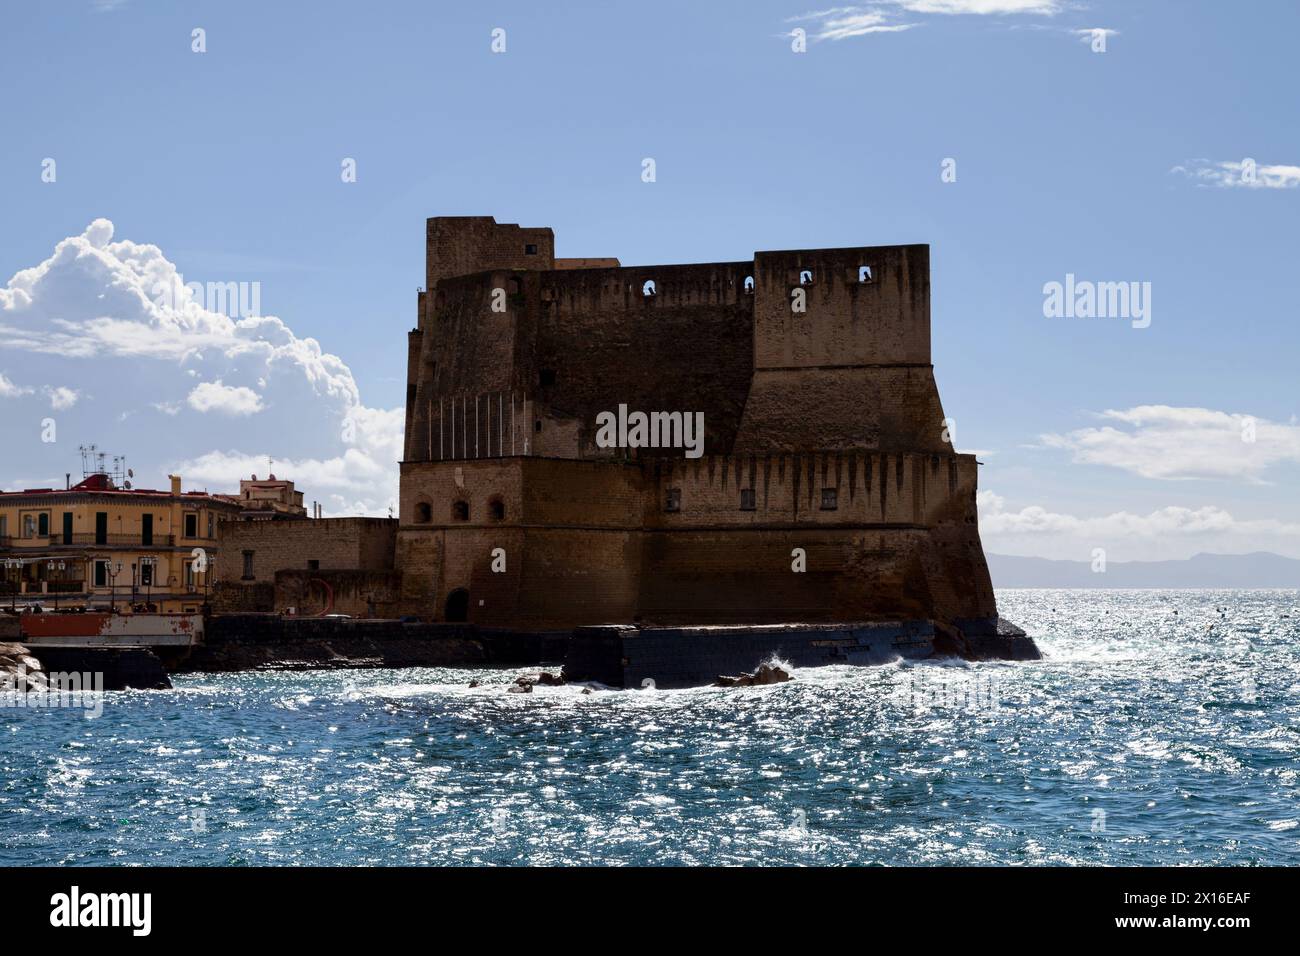 Castel dell’Ovo (englisch Egg Castle) ist eine Burg am Meer in Neapel auf der ehemaligen Insel Megaride, heute eine Halbinsel, am Golf von Neapel Stockfoto